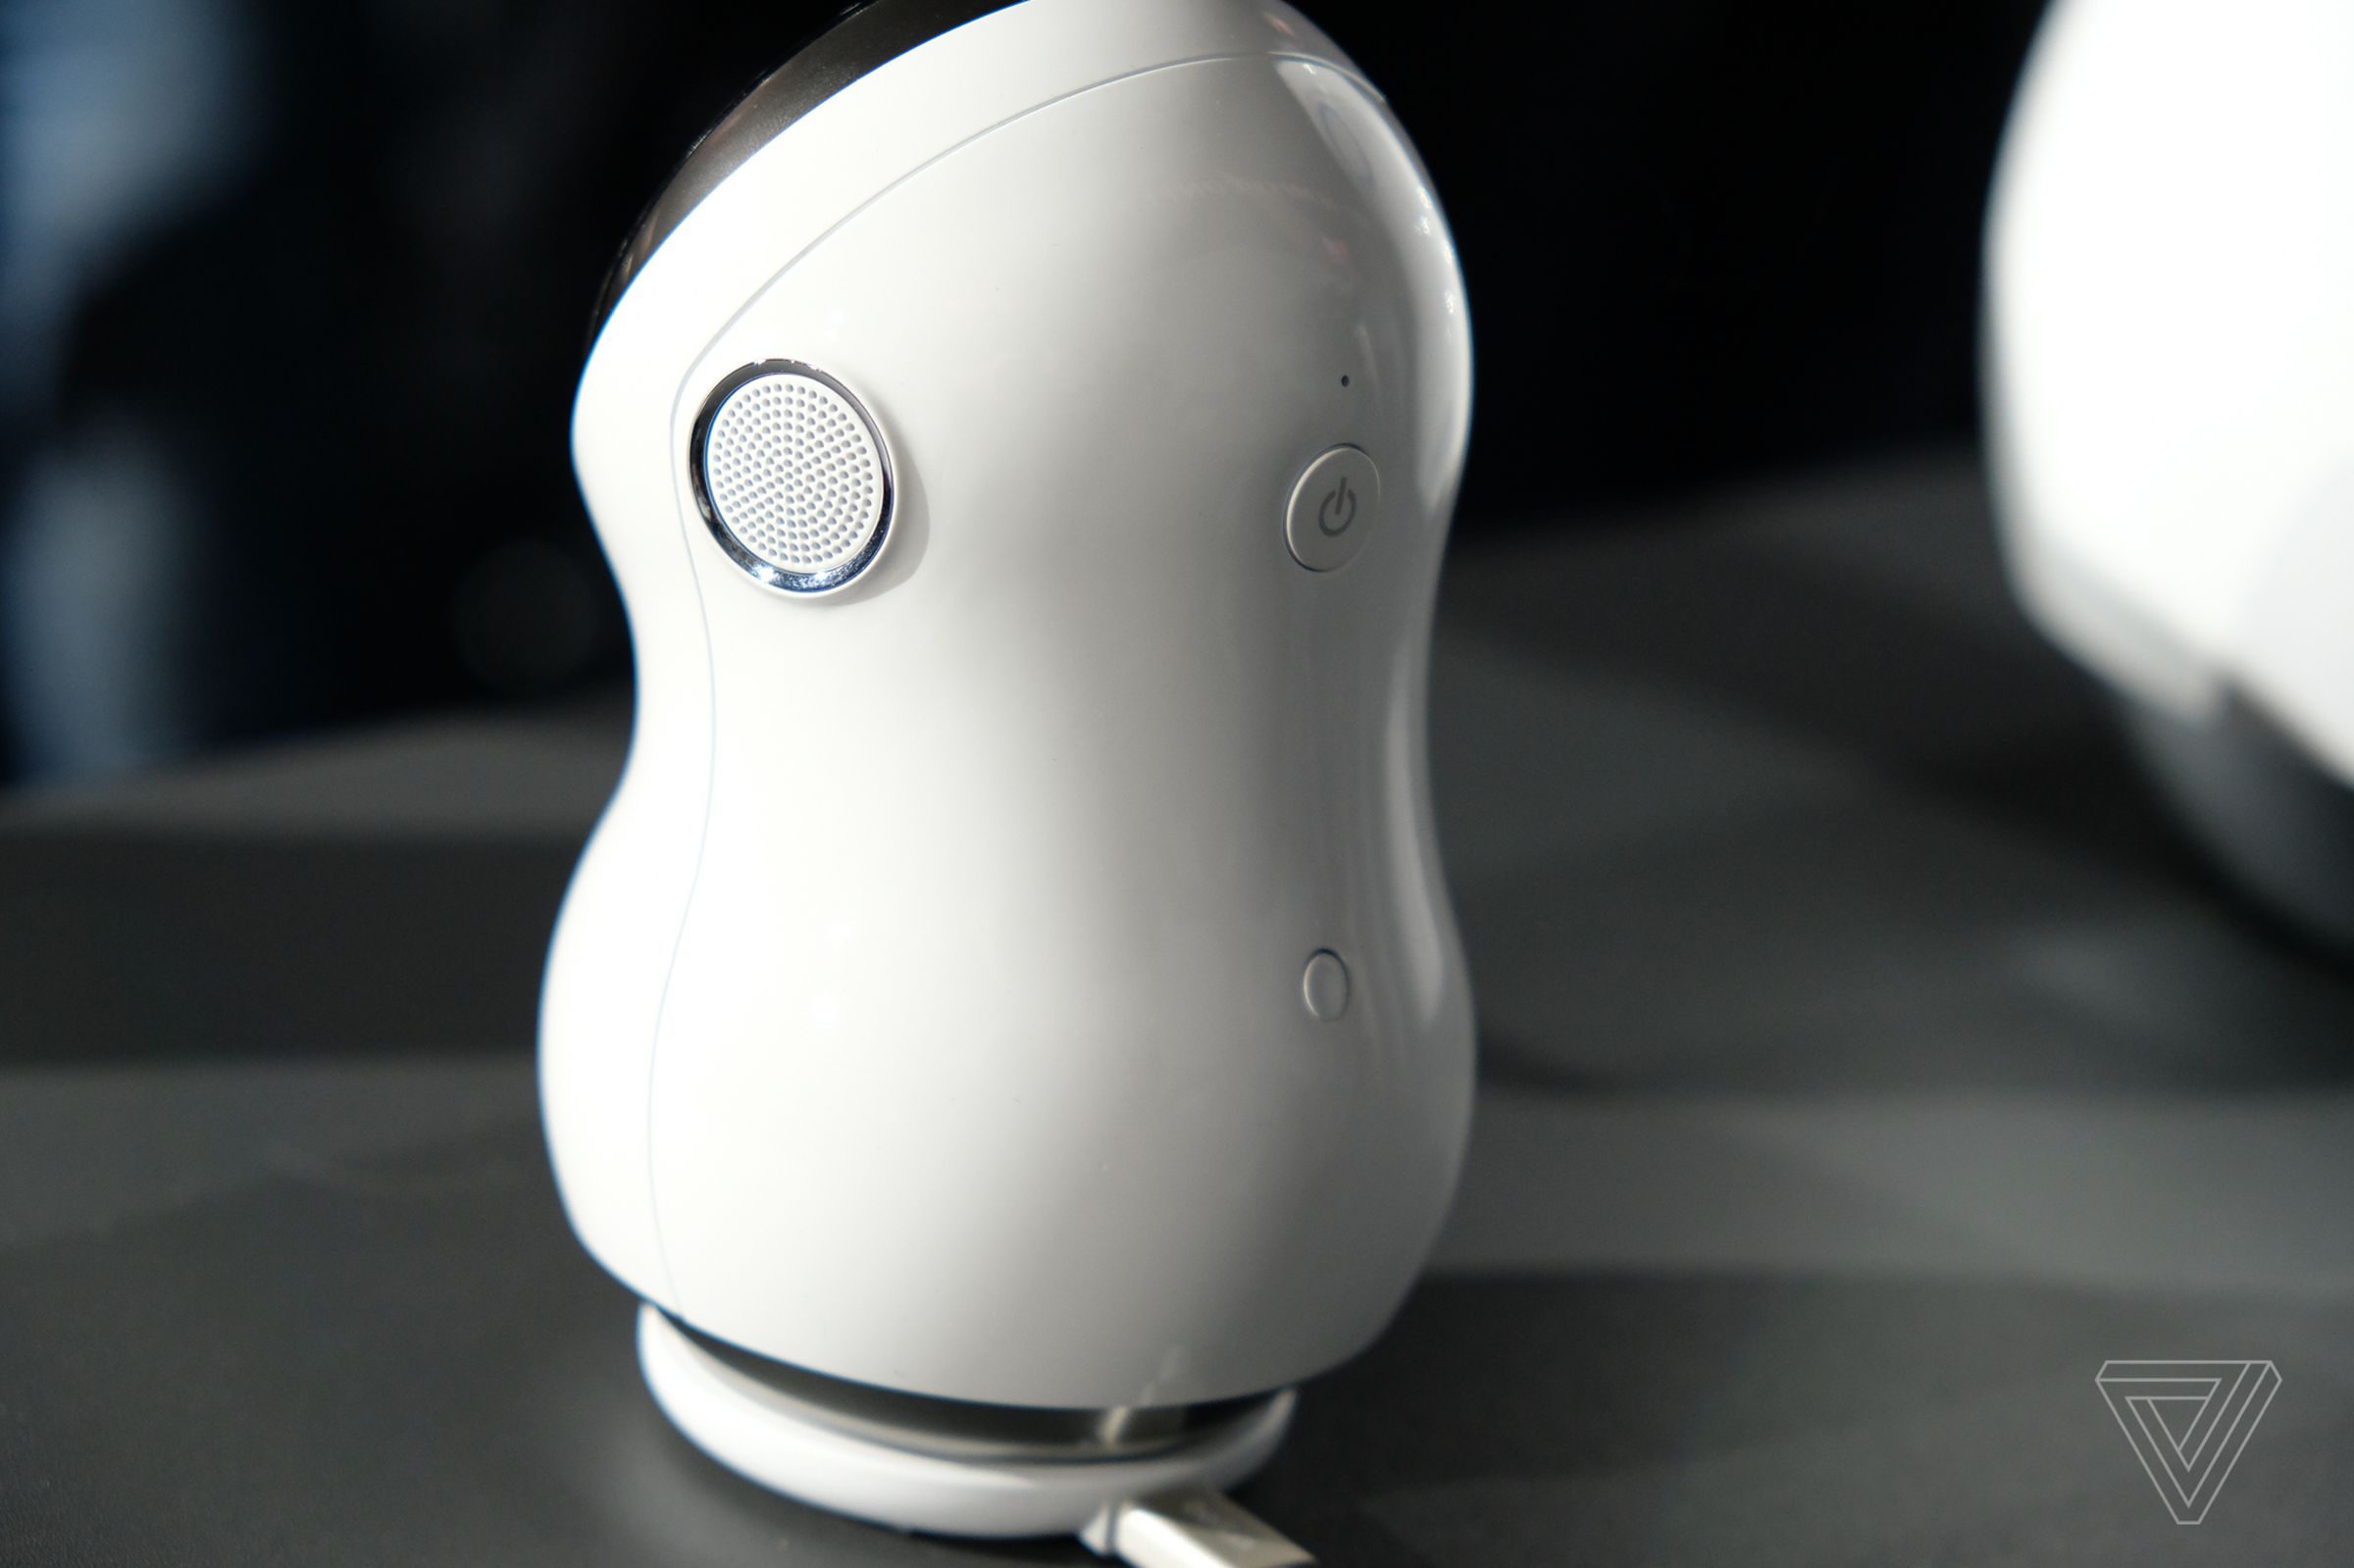 LG Hub home robot